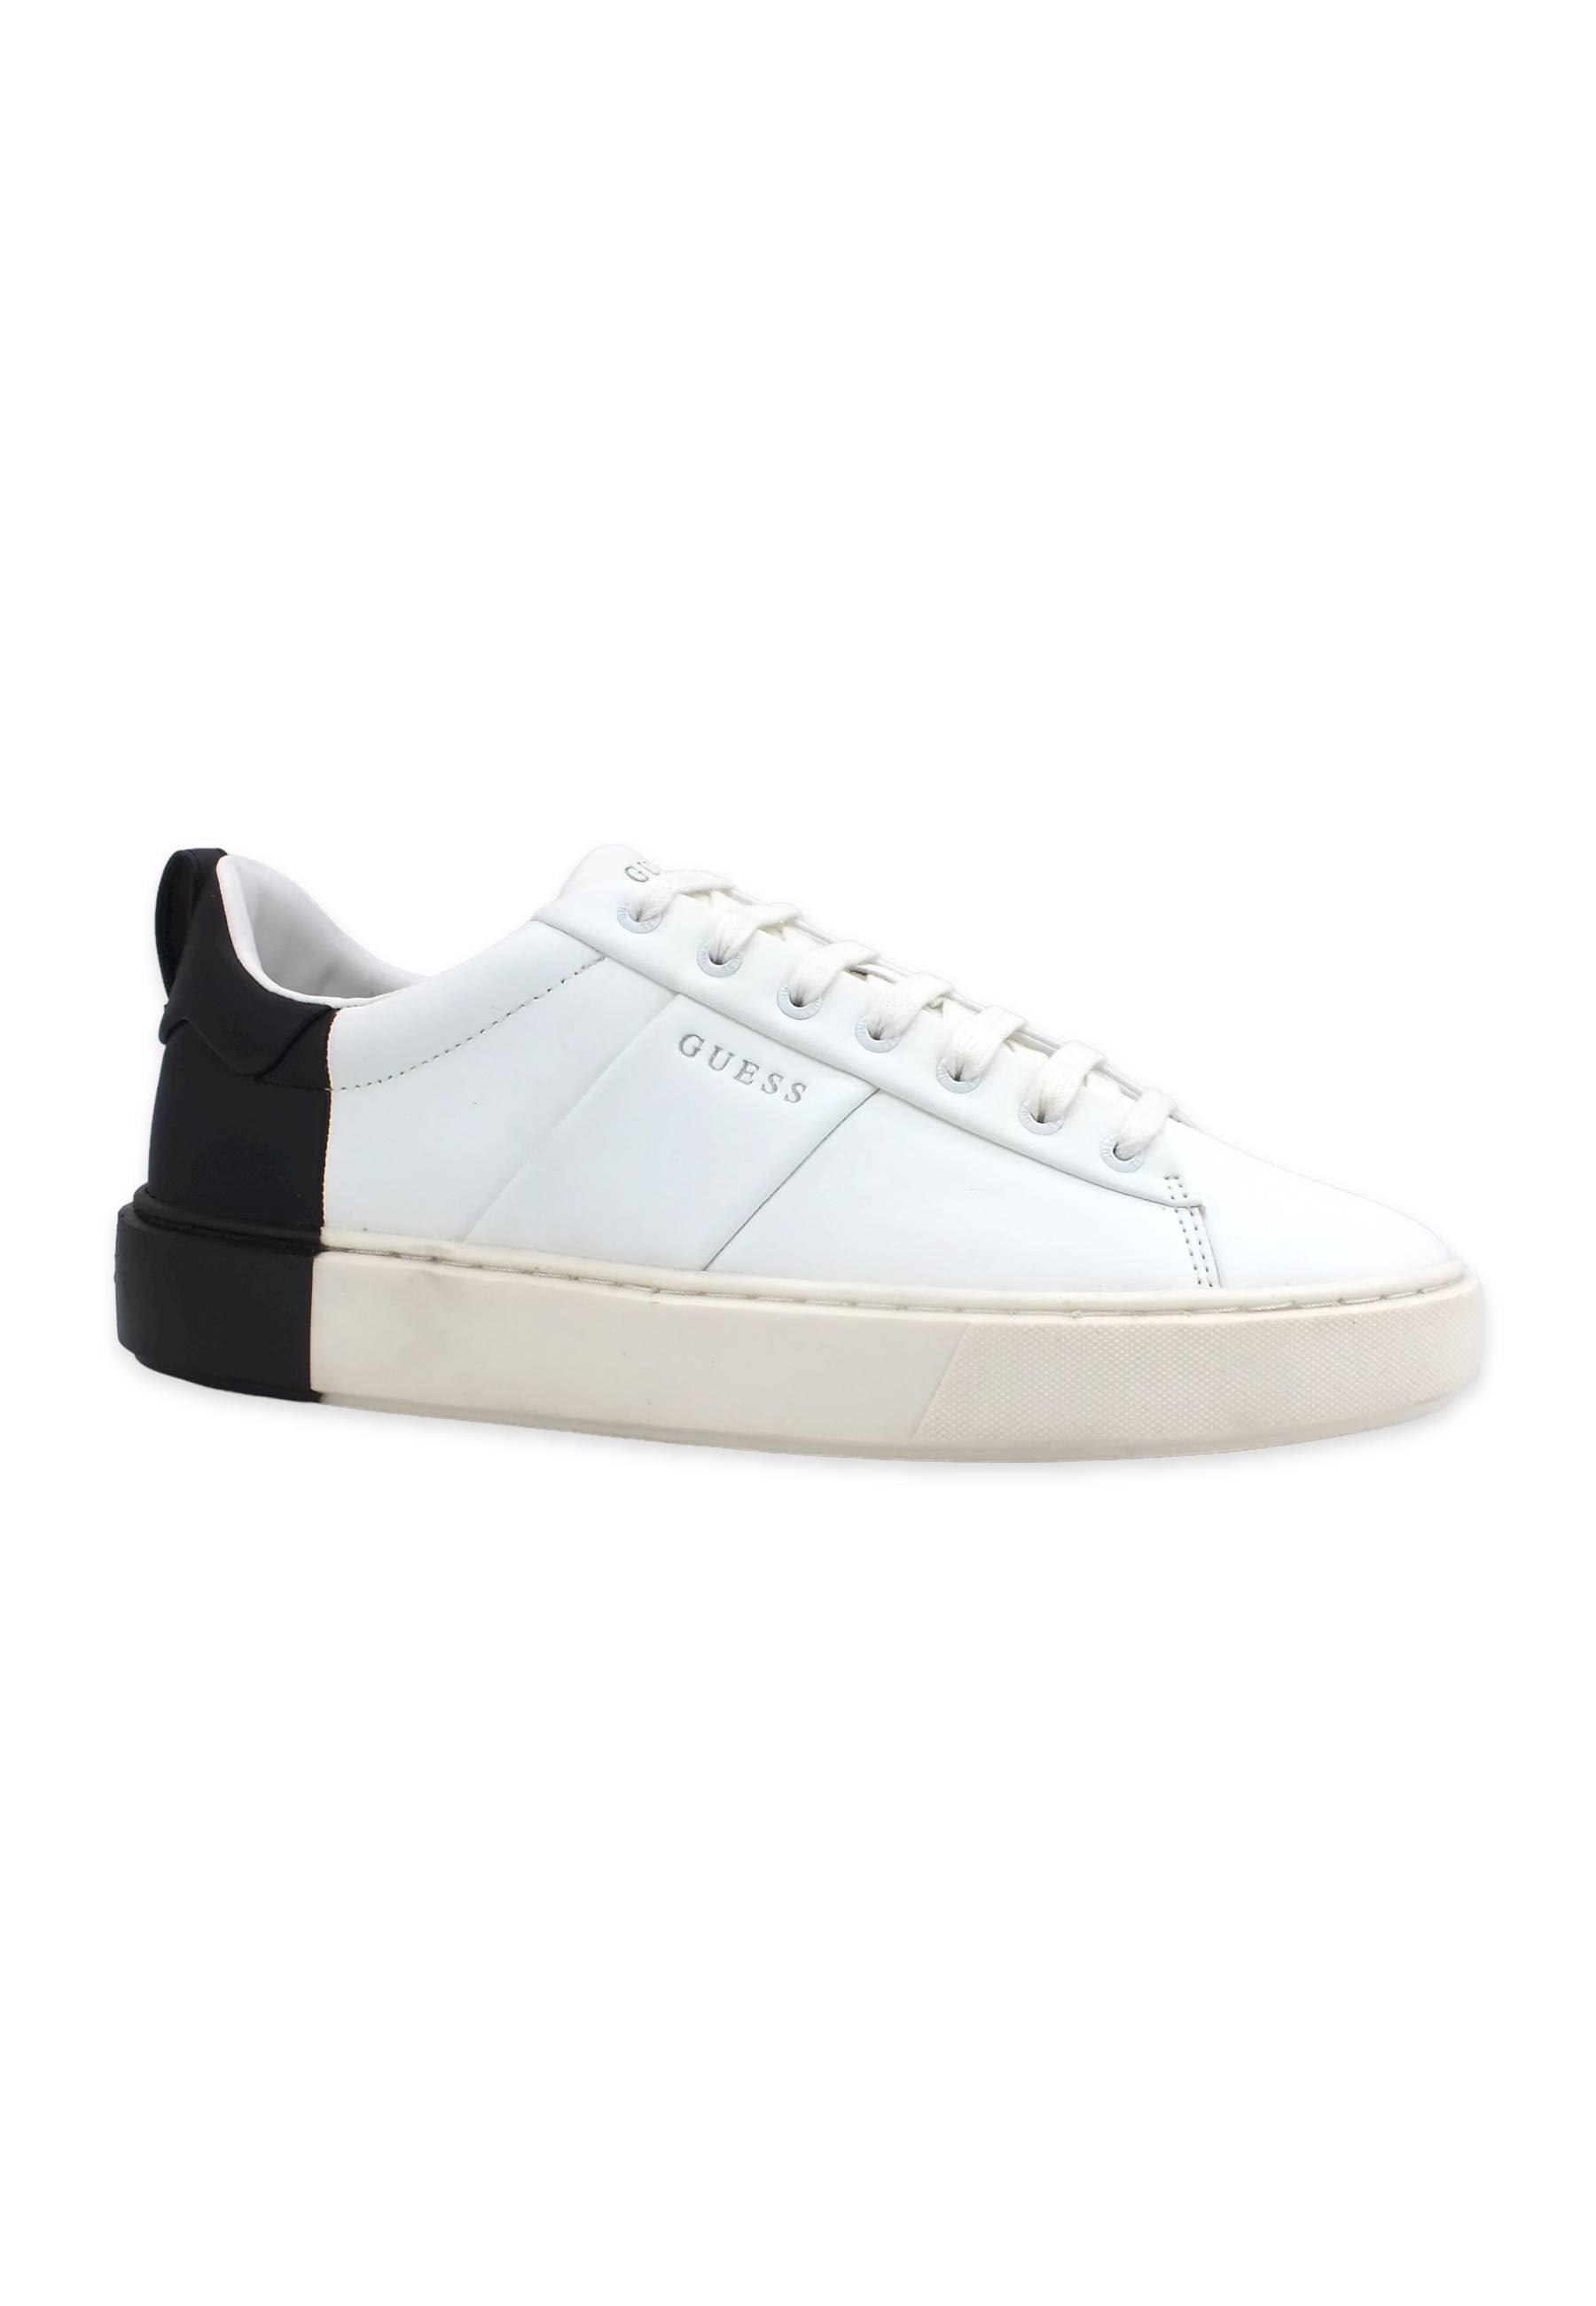 GUESS Sneaker Uomo Bicolor White Black FM5NVILEA12 - Sandrini Calzature e Abbigliamento